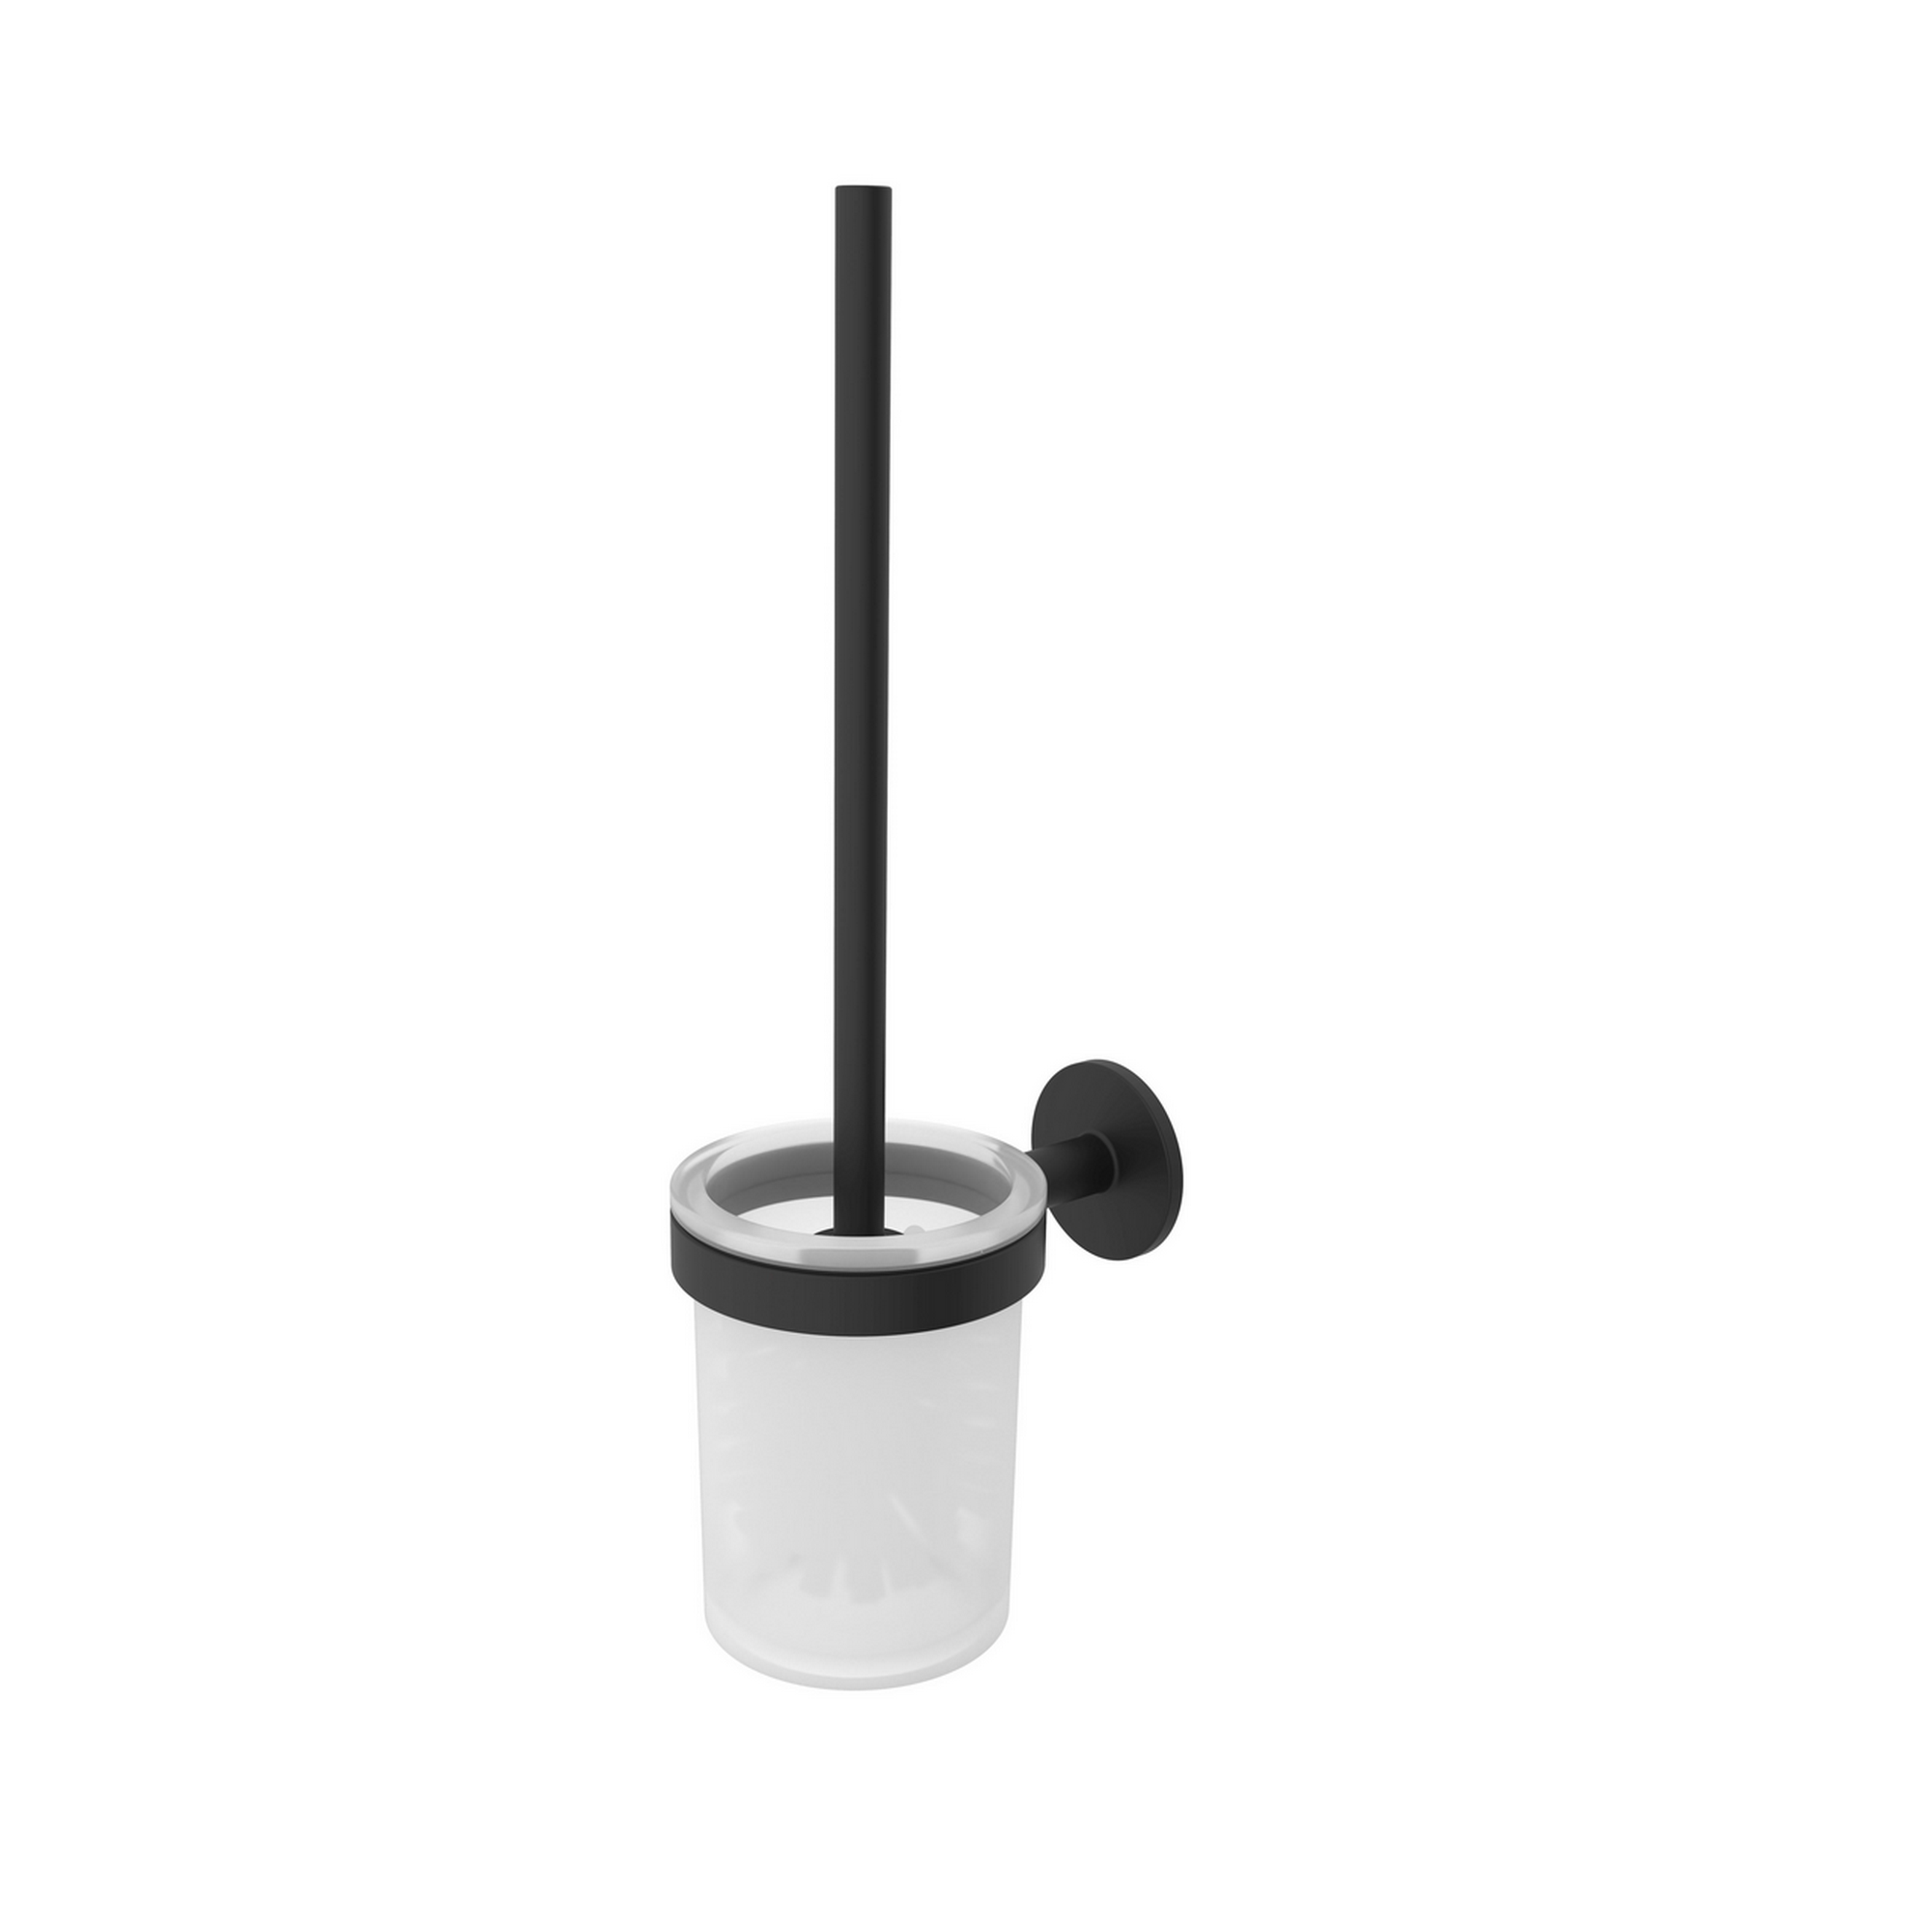 WC-Bürstengarnitur 'Nero' wandhängend rund schwarz/weiß + product picture